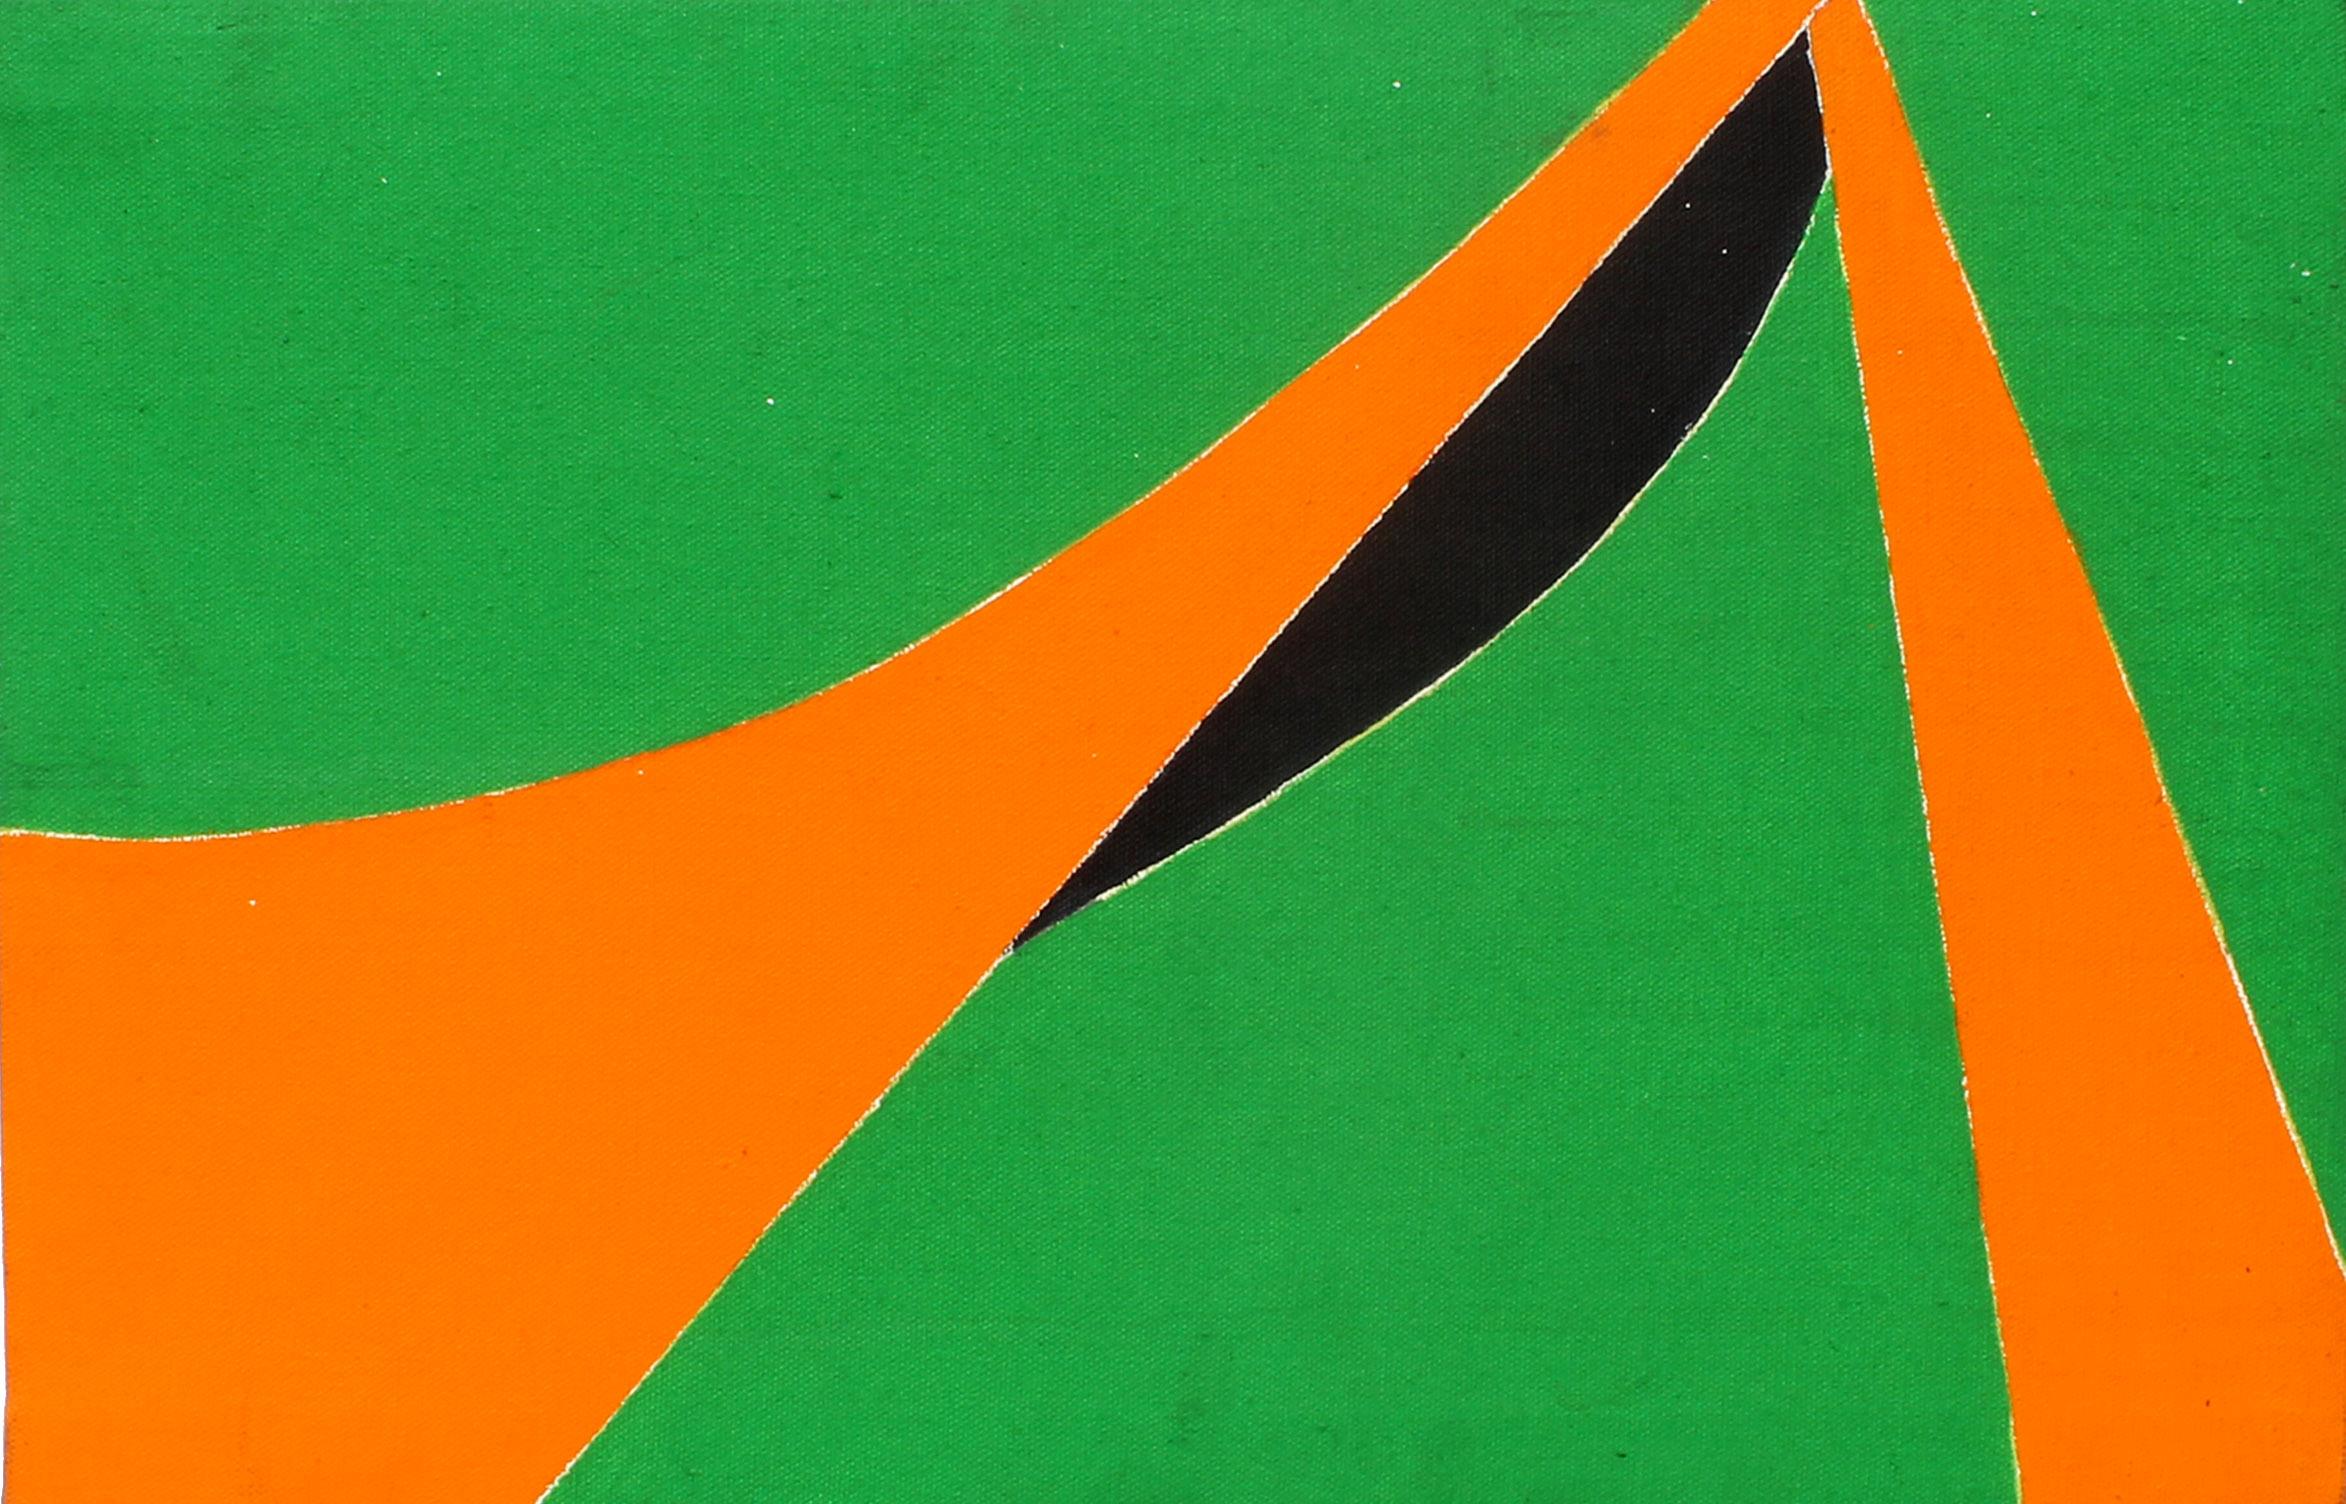 Martica Miguens Abstract Painting – Minimalistisches, minimalistisches Gemälde, New York, amerikanische Künstlerin, Orange, Grün, Schwarz, 1970